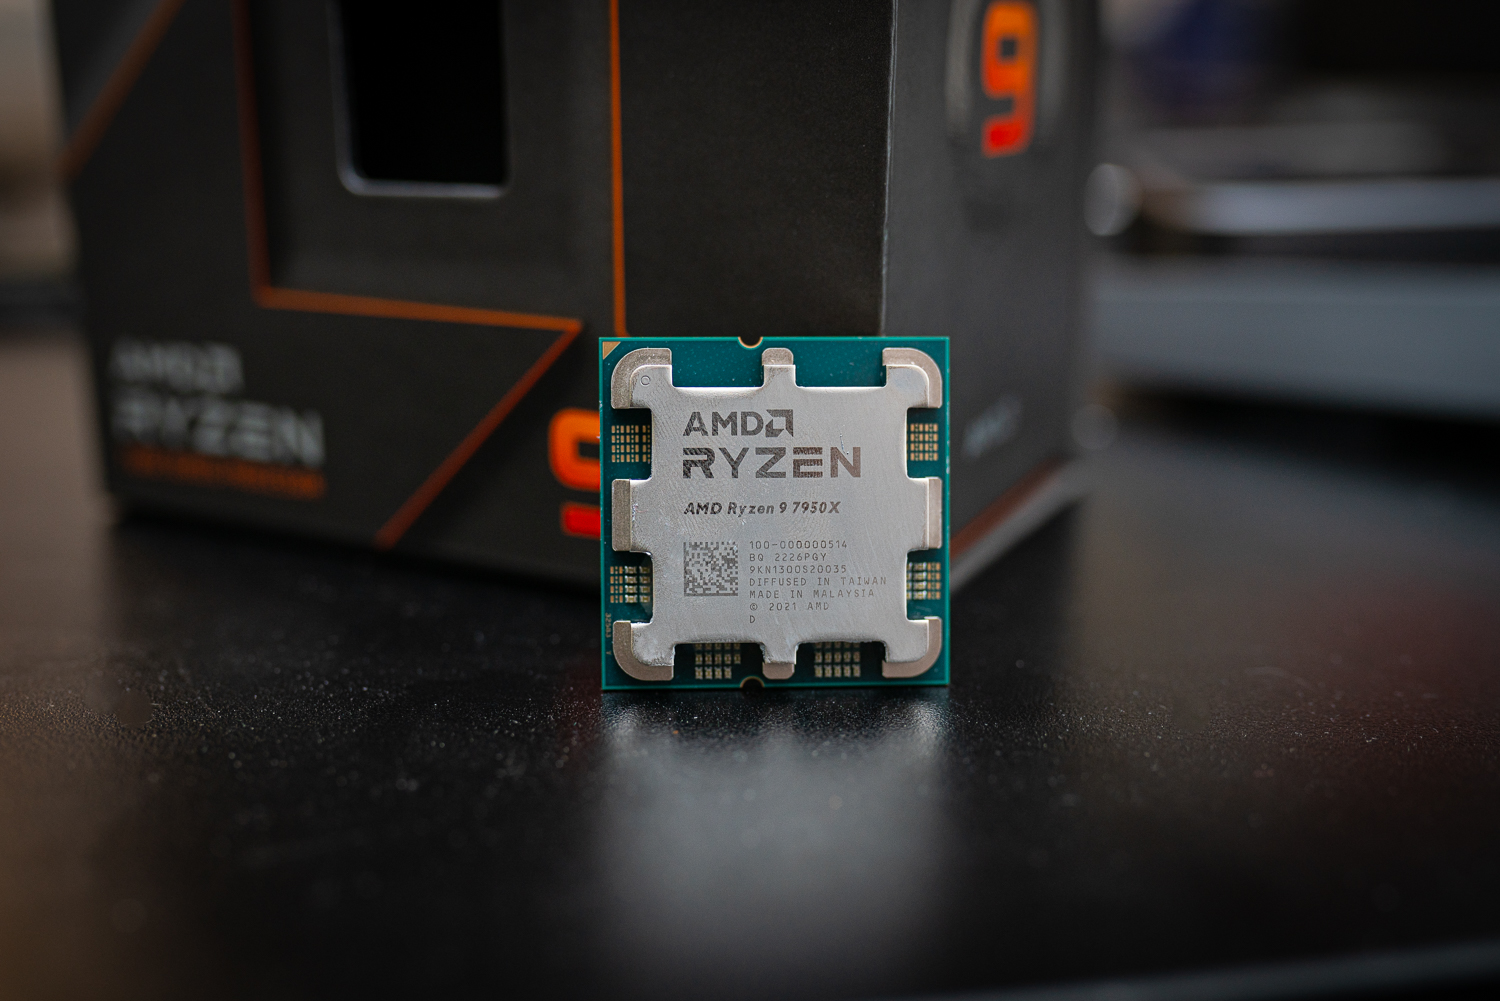 AMD Ryzen 9 7950X Hands-On Review